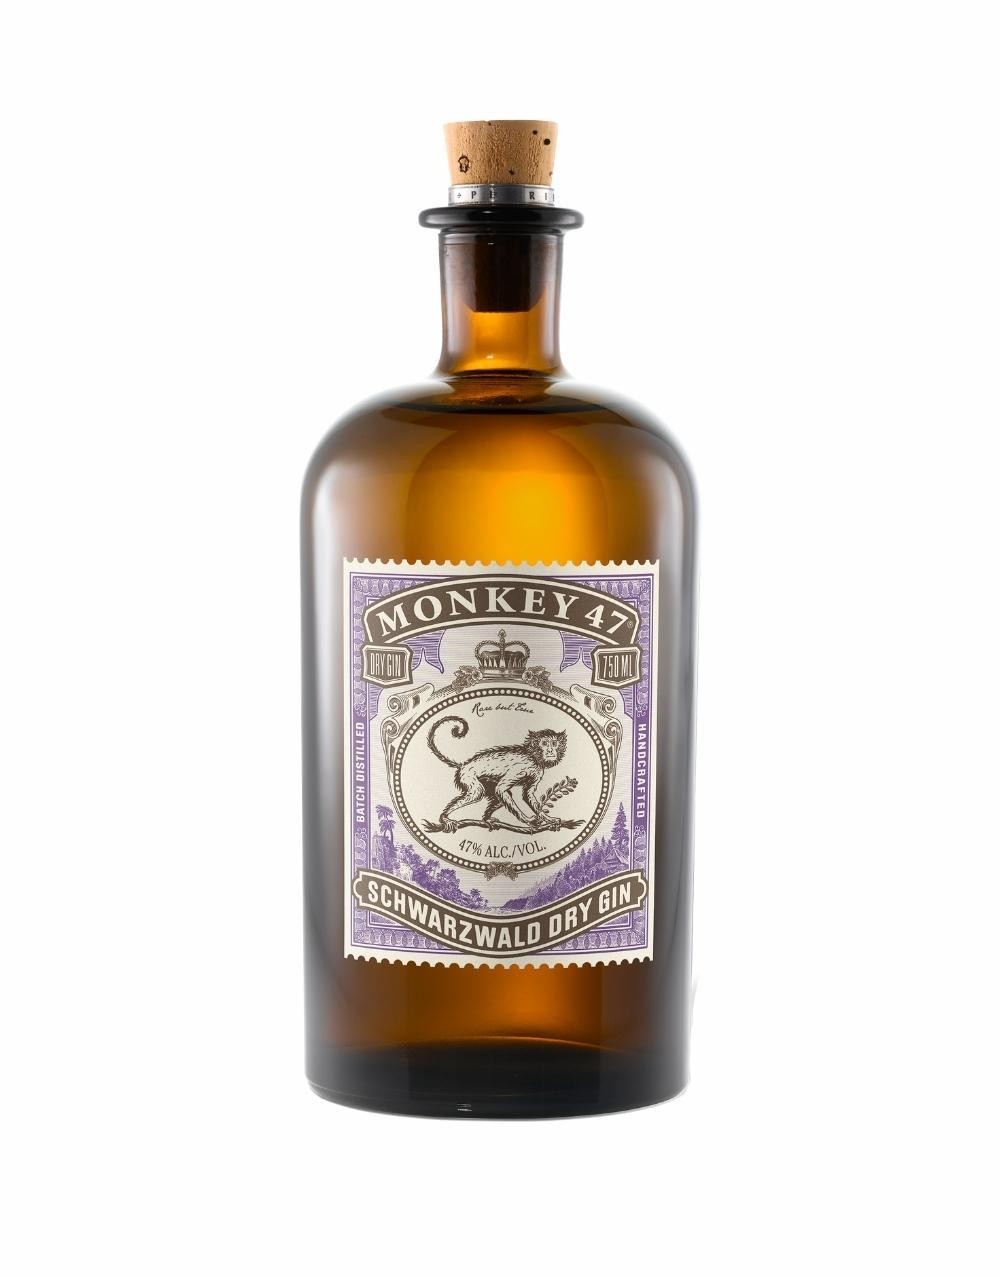 Monkey 47 Schwarzwald Dry Gin 750ml